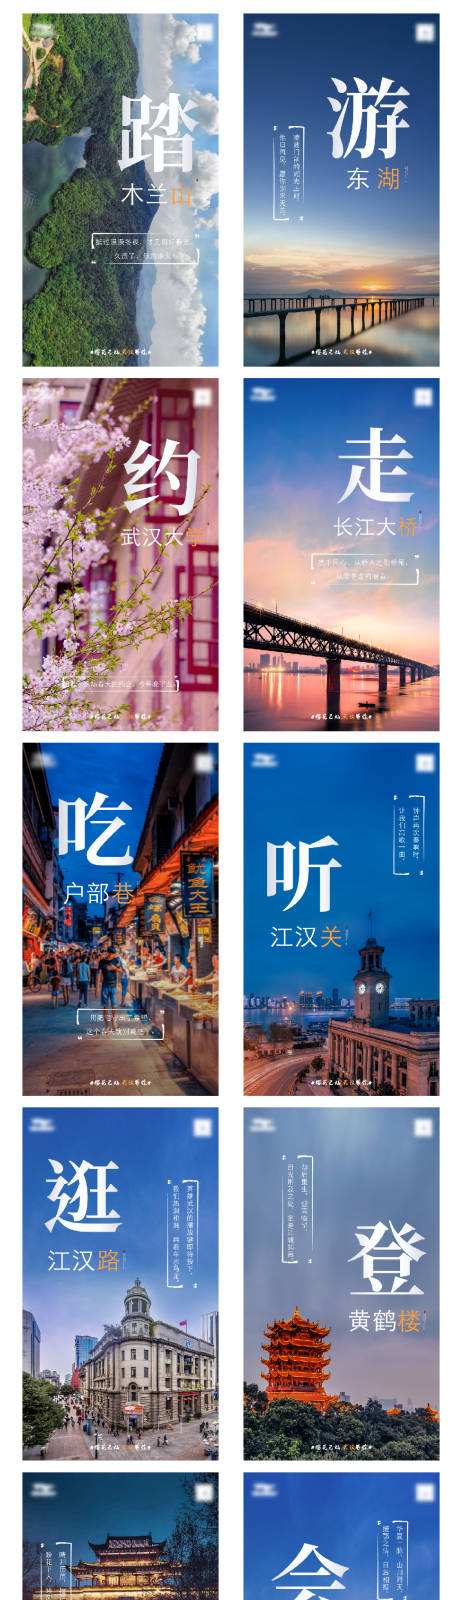 武汉标志性建筑风景系列海报